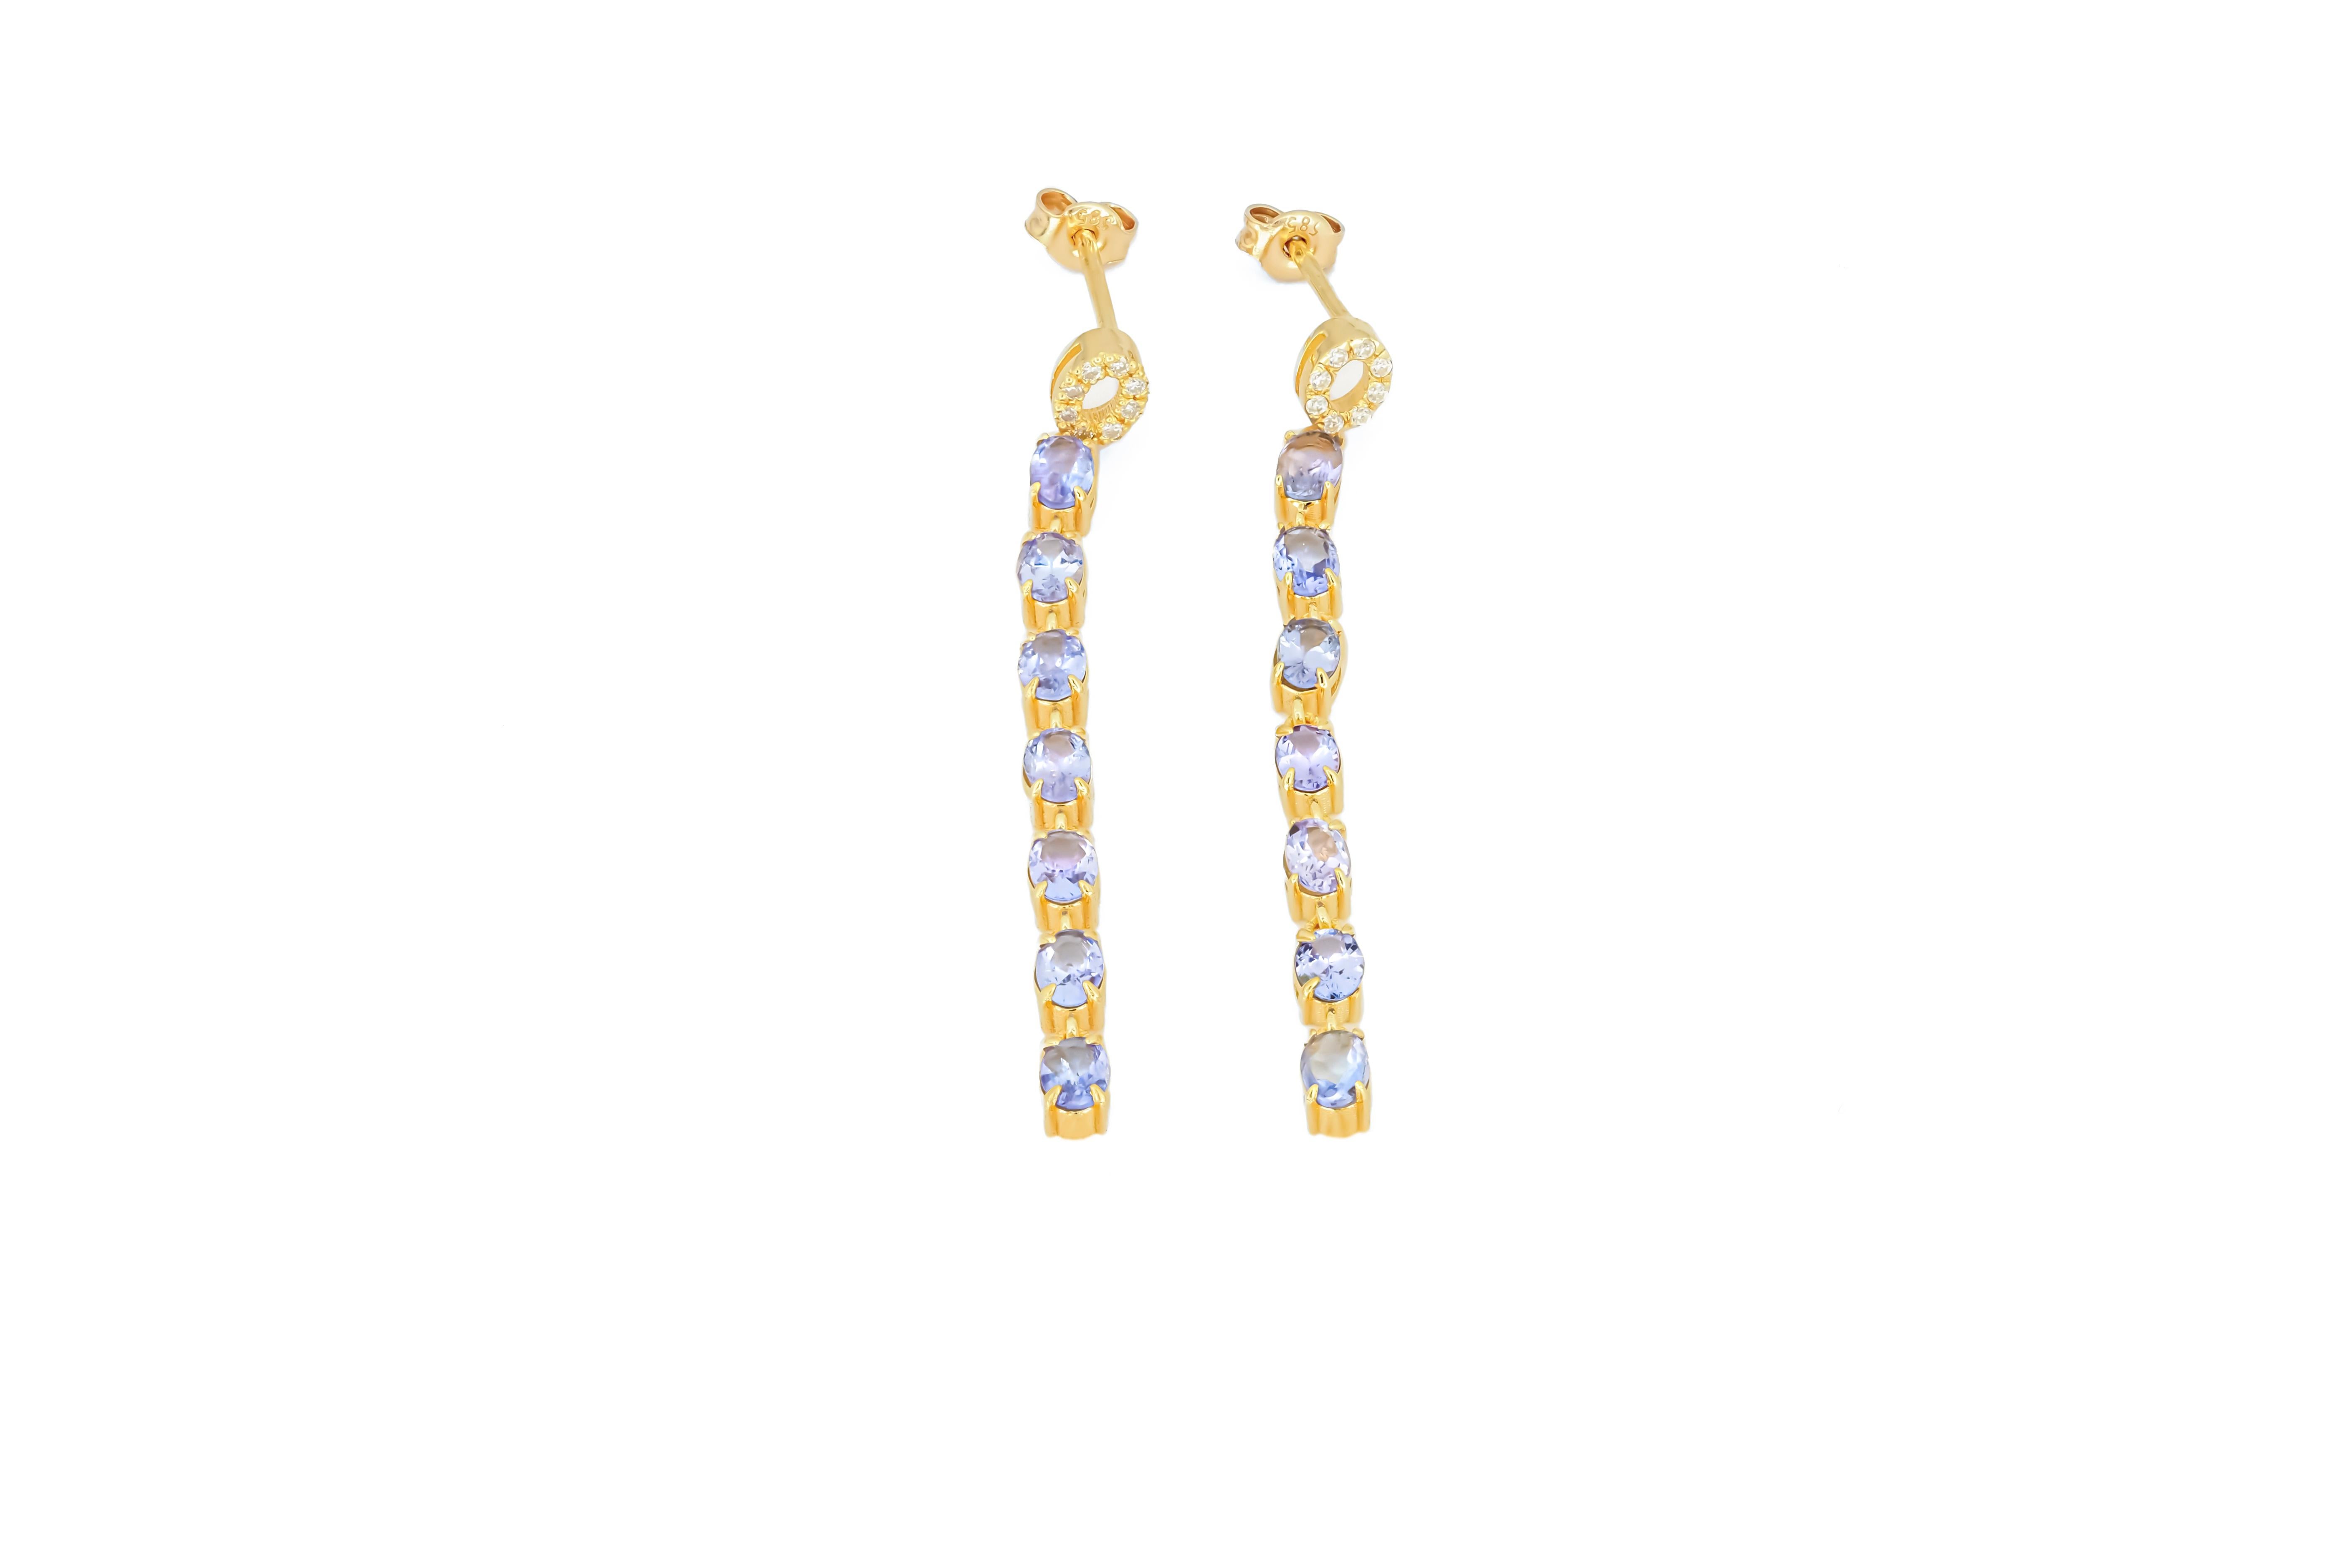 Modern Tanzanite dangle earrings studs in 14k gold. For Sale